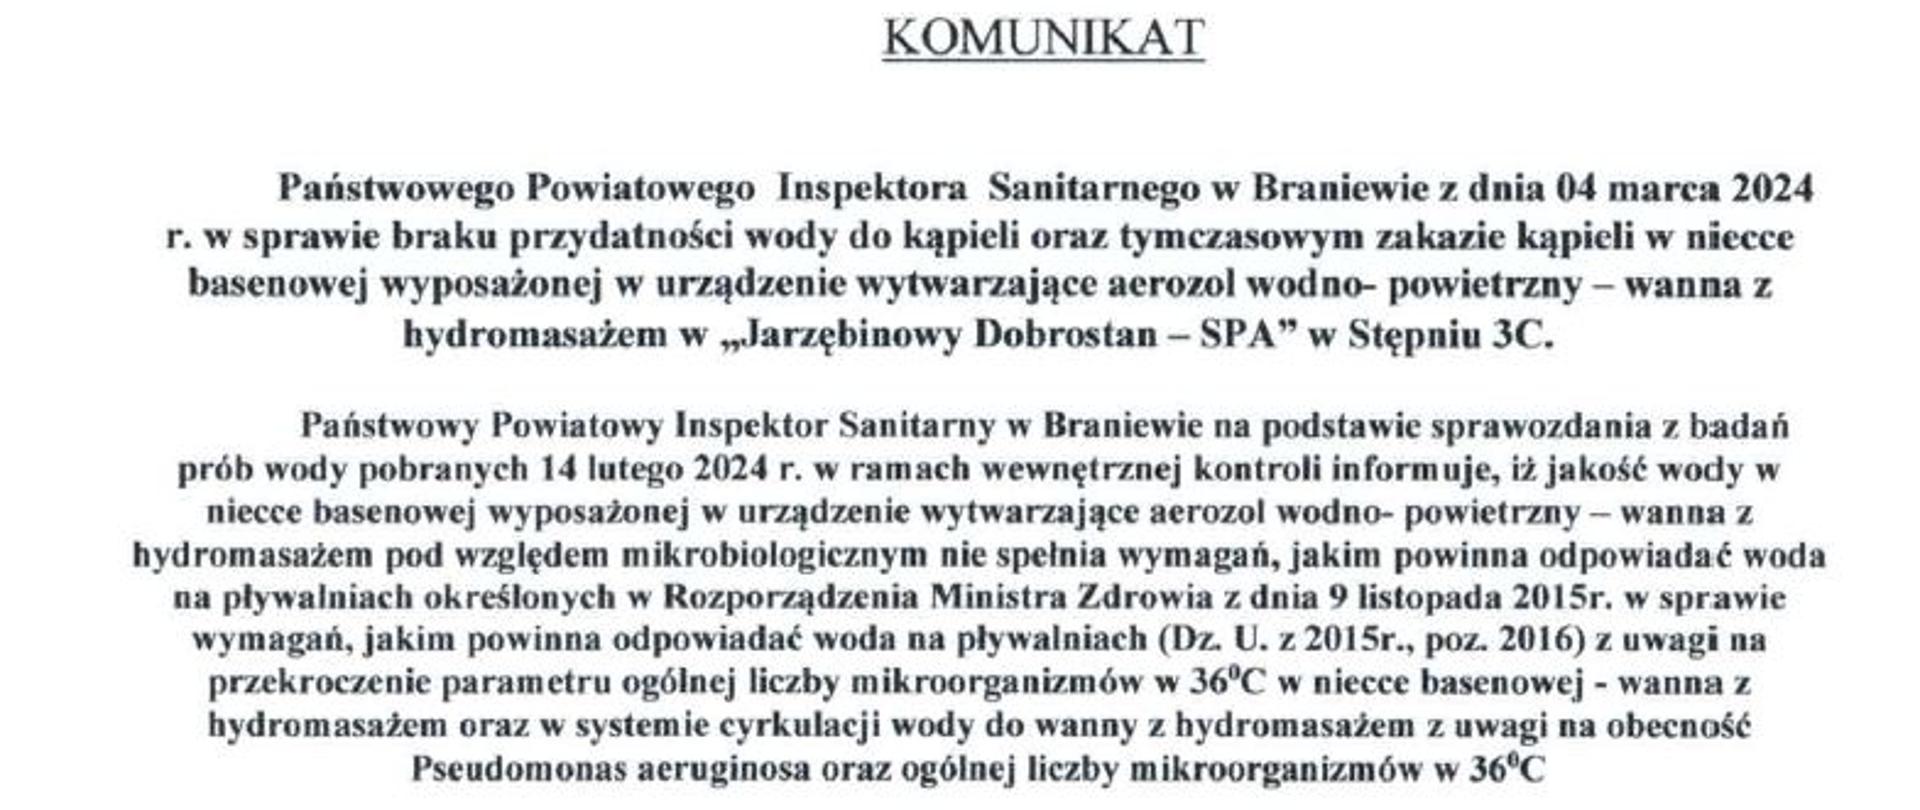 Komunikat Państwowego Powiatowego Inspektora Sanitarnego w Braniewie w sprawie braku przydatności wody do kąpieli oraz tymczasowym zakazie kąpieli w niecce basenowej wyposażonej w urządzenie wytwarzające aerozol wodno-powietrzny wanna z hydromasażem w "Jarzębinowy Dobrostan - SPA" w Stępniu 3C